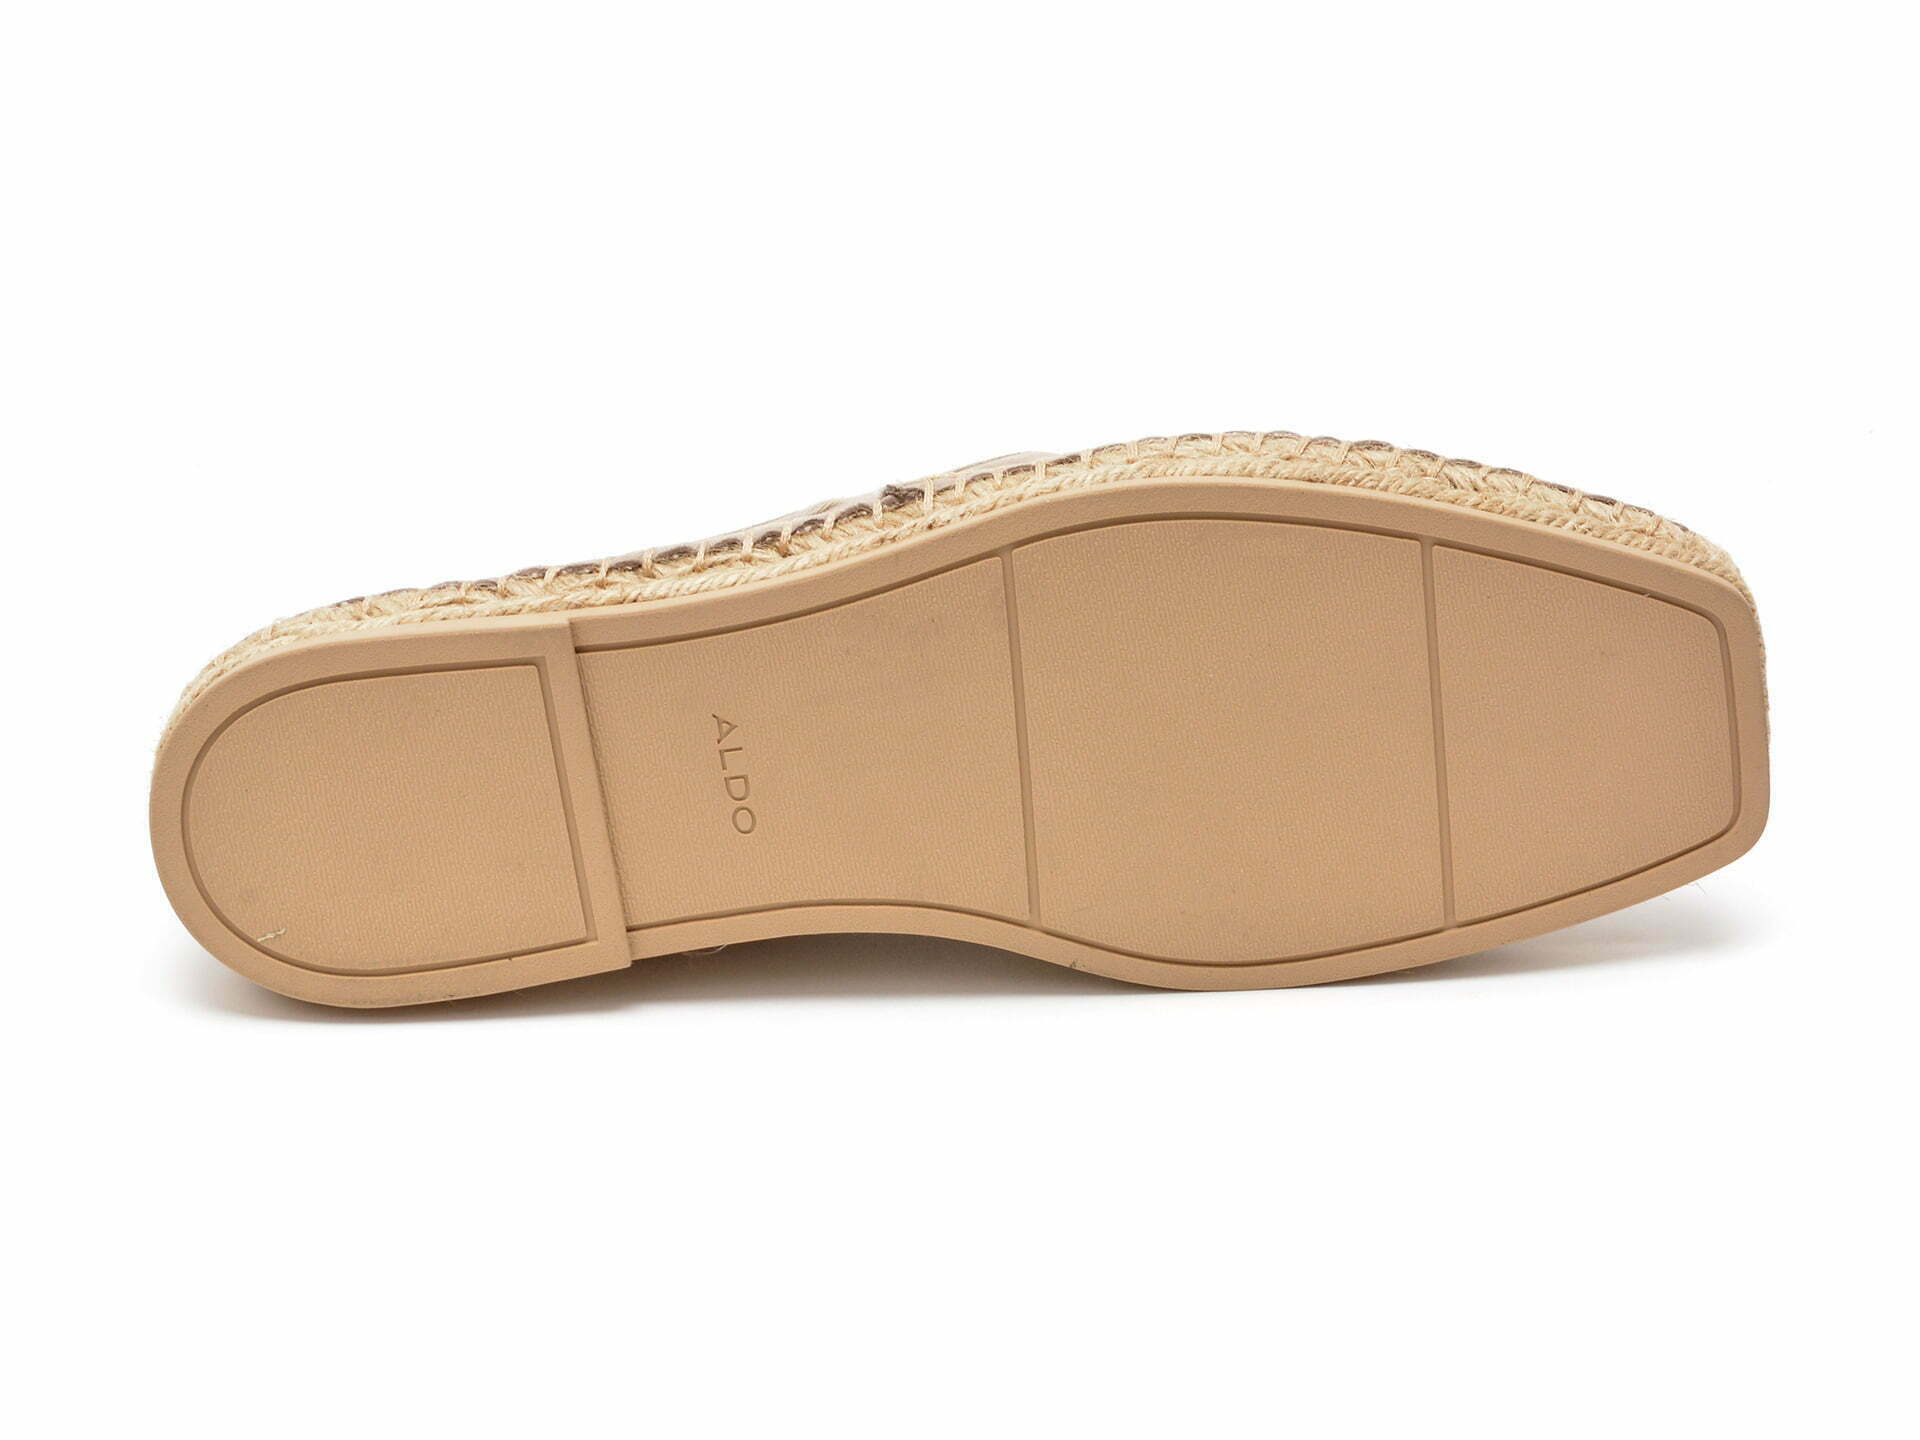 Comandă Încălțăminte Damă, la Reducere  Pantofi ALDO gri, PERUCO240, din piele intoarsa Branduri de top ✓